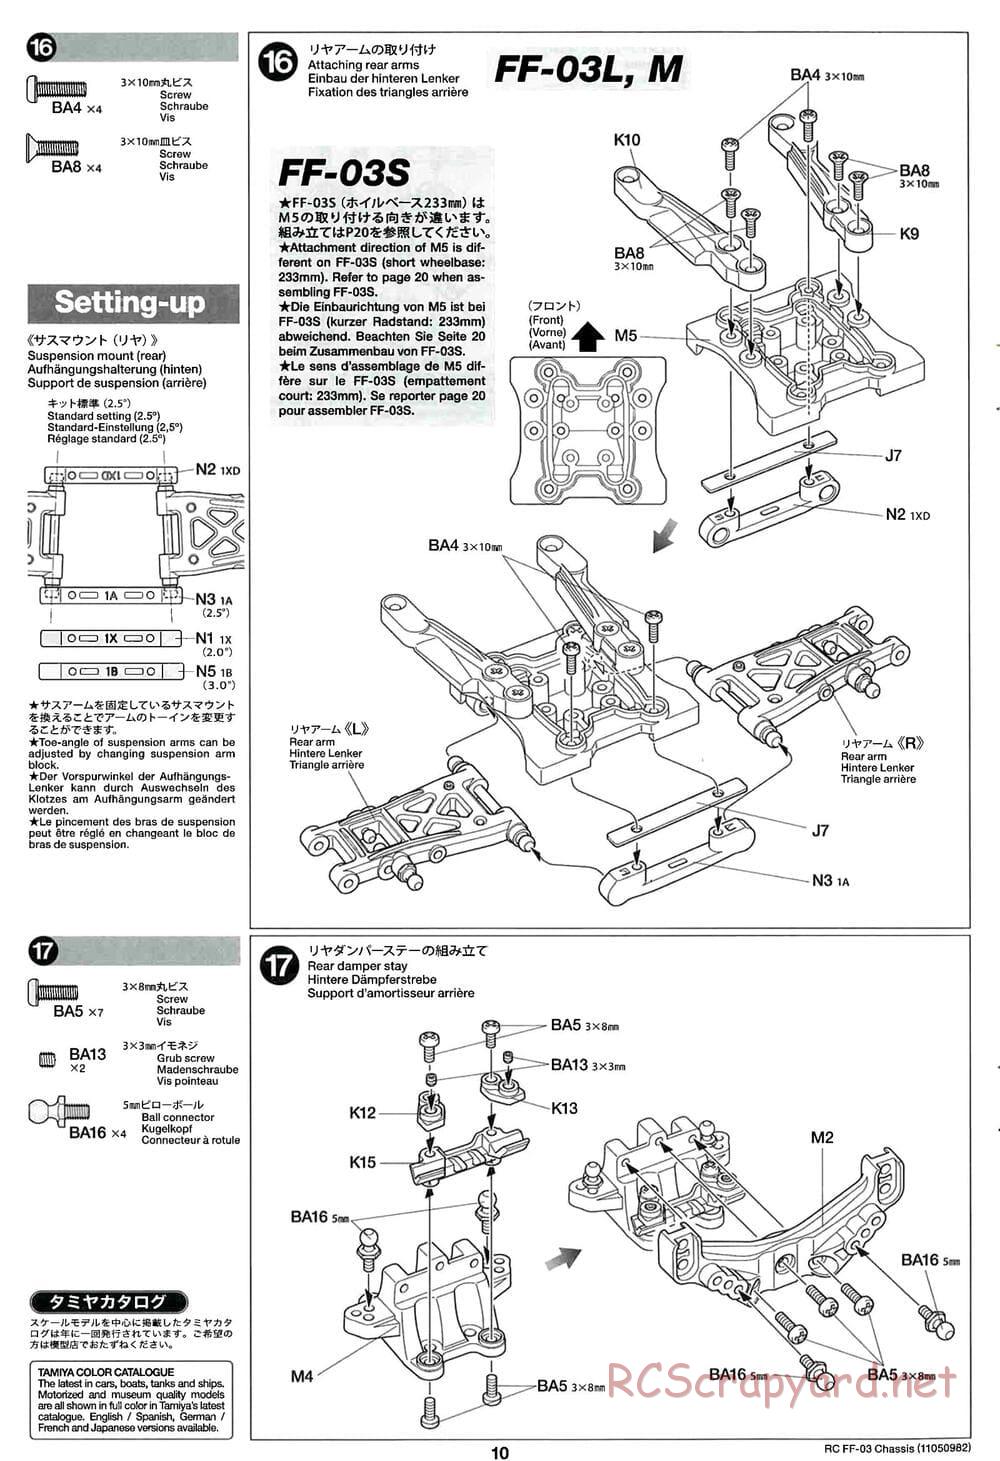 Tamiya - Honda Accord Aero Custom - FF-03 Chassis - Manual - Page 10